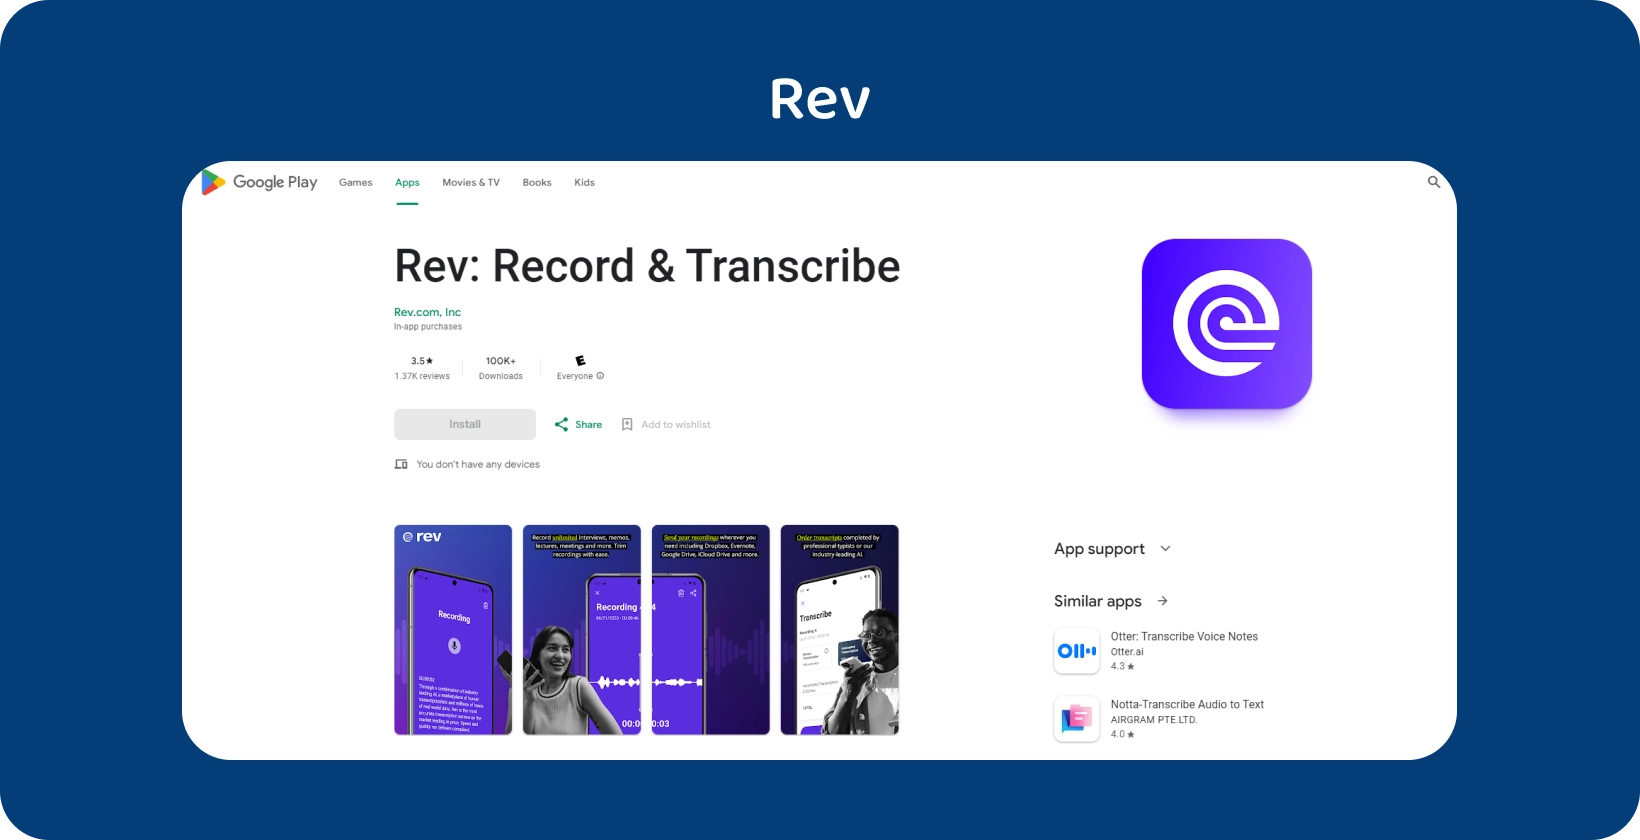 Visualizzazione Google Play Store dell'app Rev, evidenziando le funzionalità per la registrazione e la trascrizione su dispositivi Android.